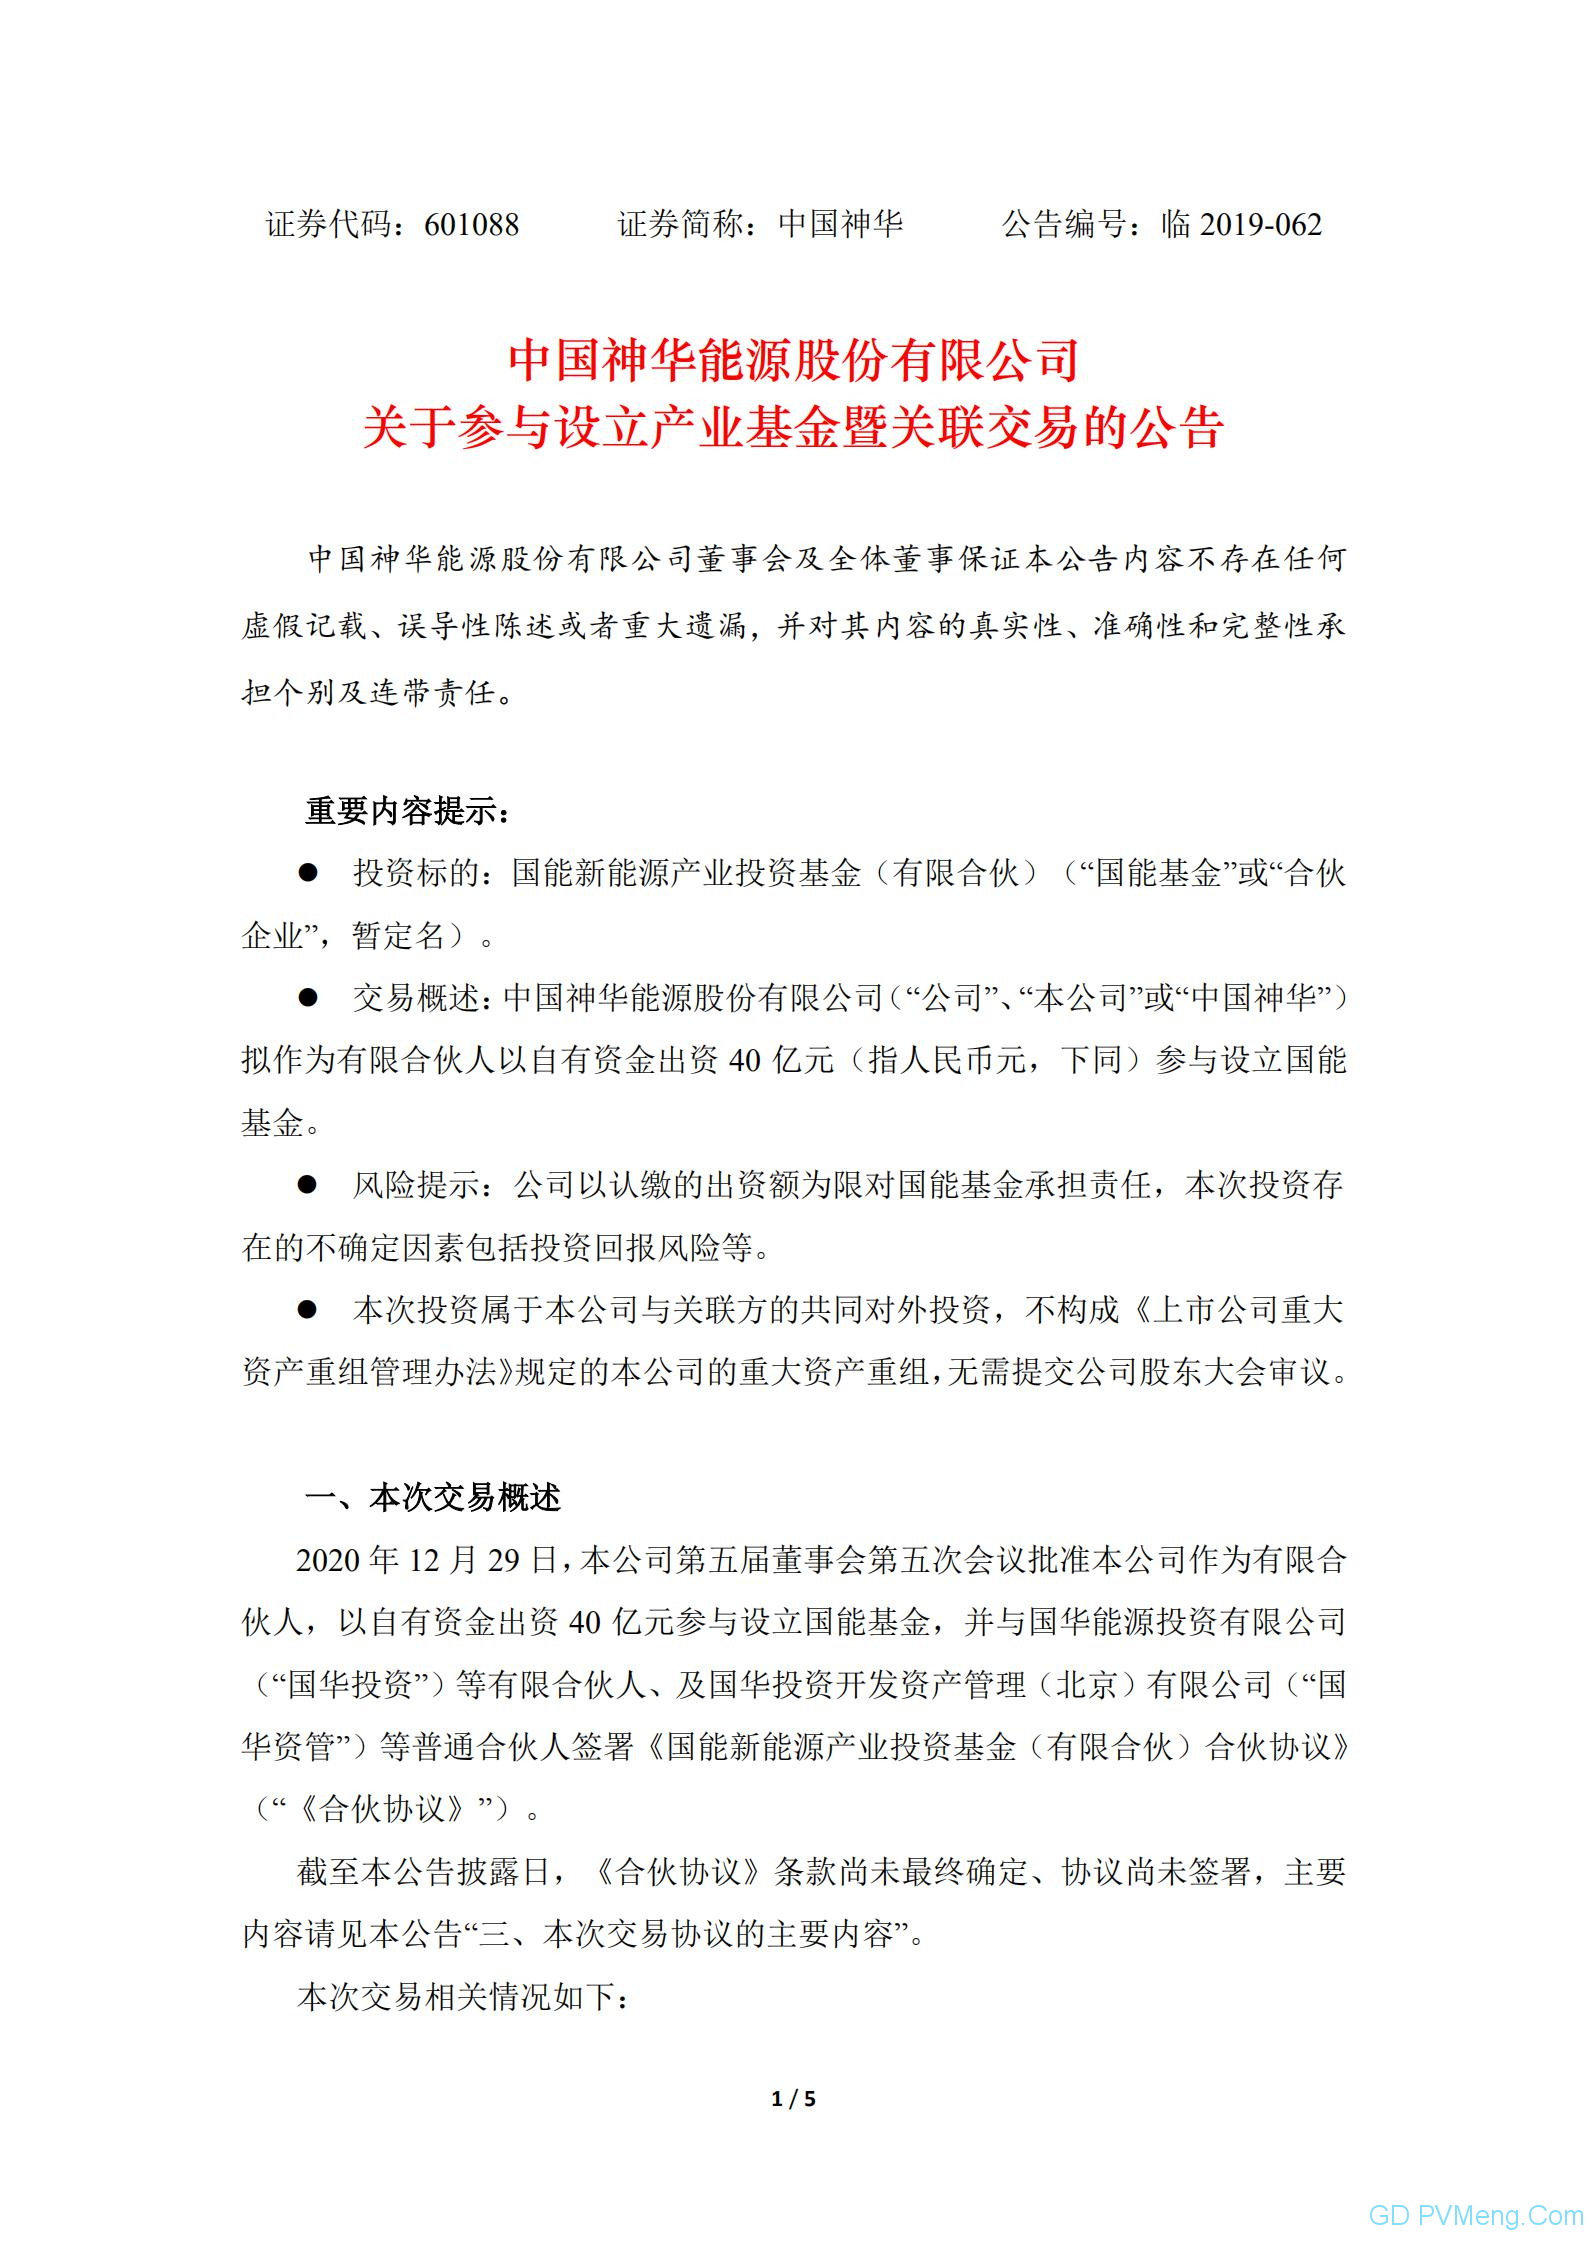 中国神华：关于参与设立产业基金暨关联交易的公告20201229